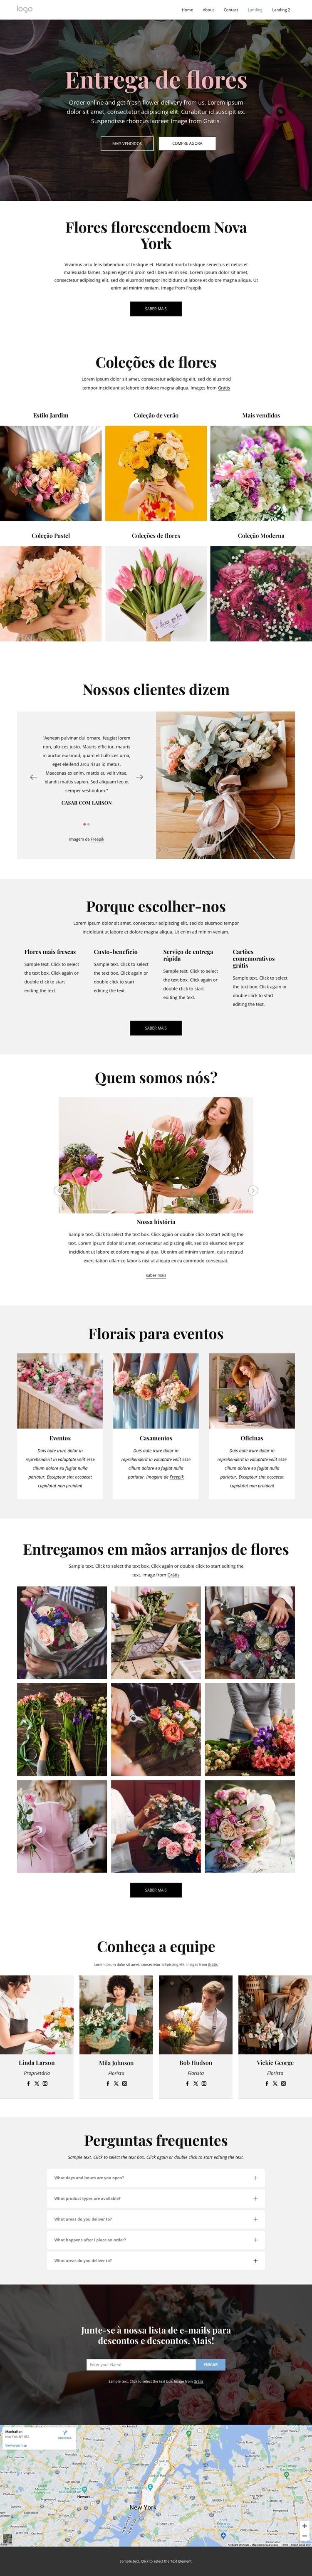 Tornamos o envio de flores divertido Design do site